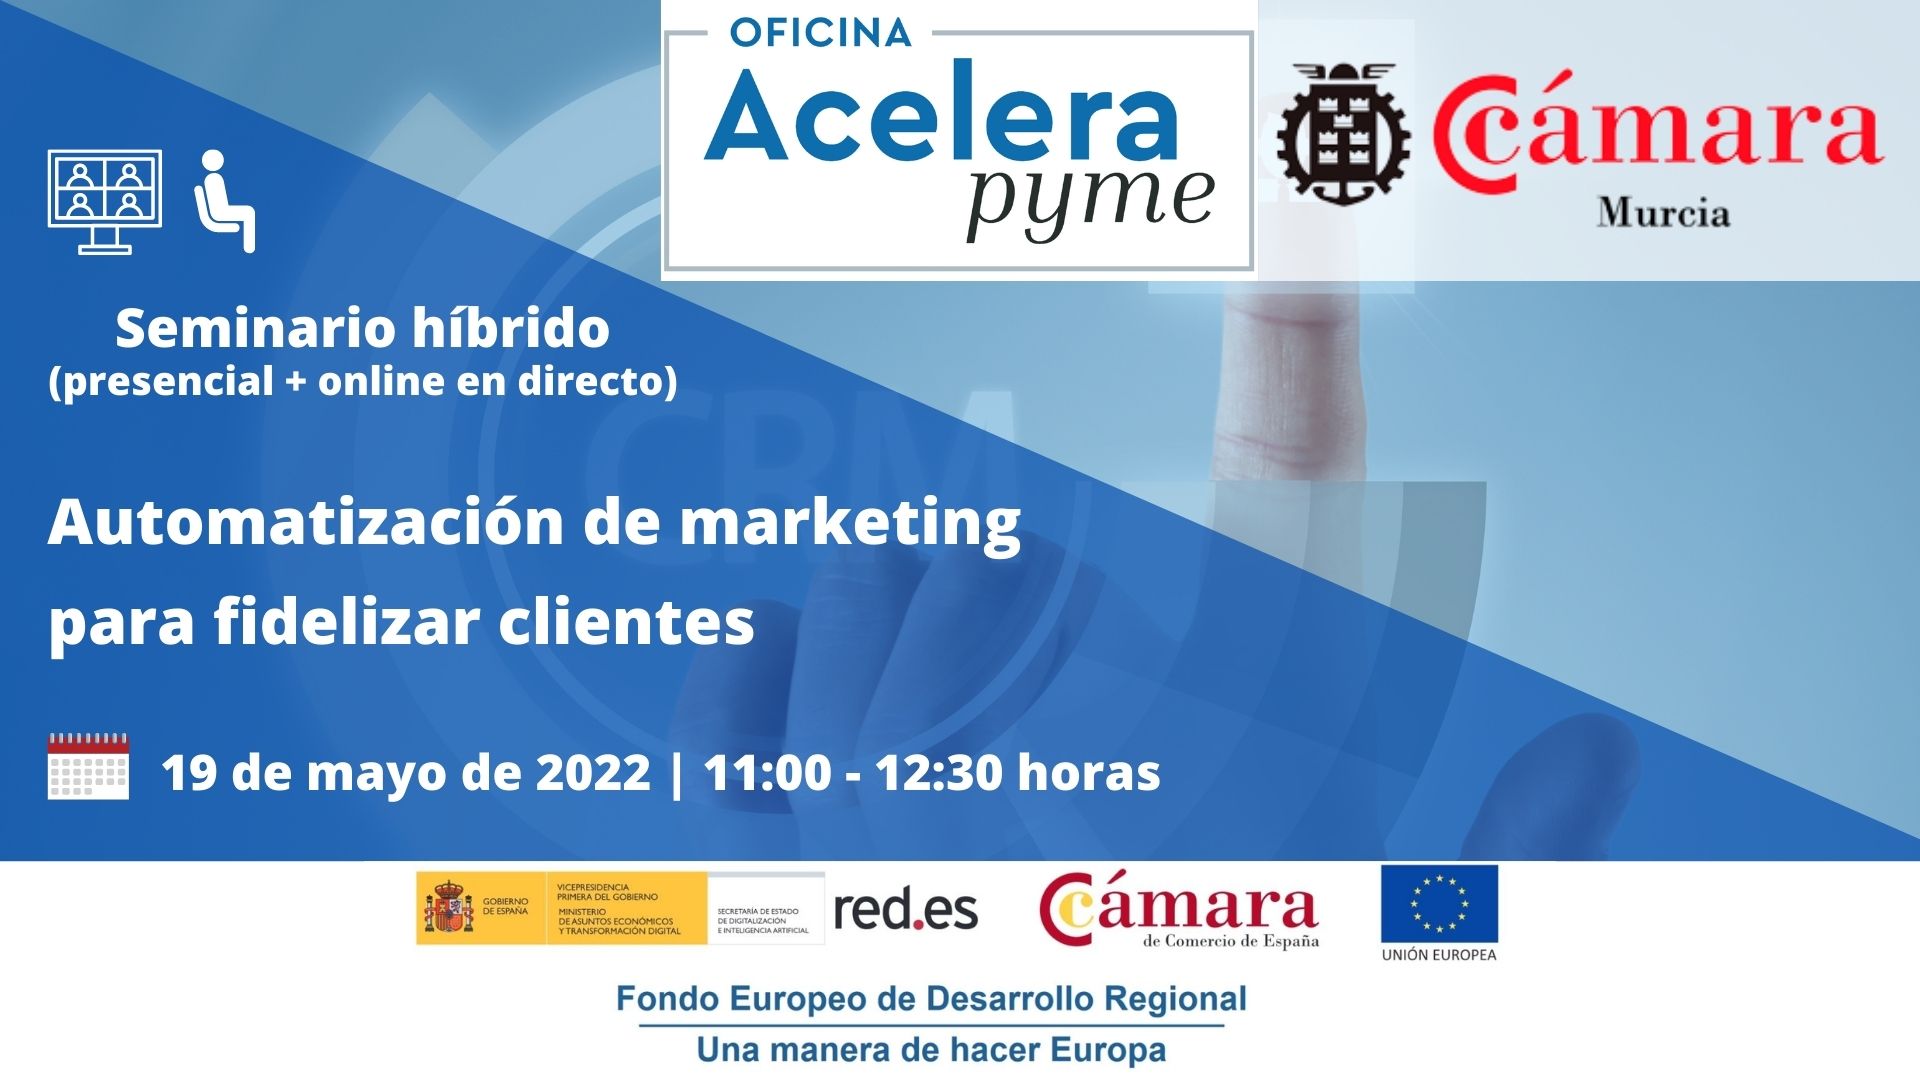 Seminario | Automatización de marketing para fidelizar clientes | Oficina Acelera Pyme | Cámara de Comercio de Murcia